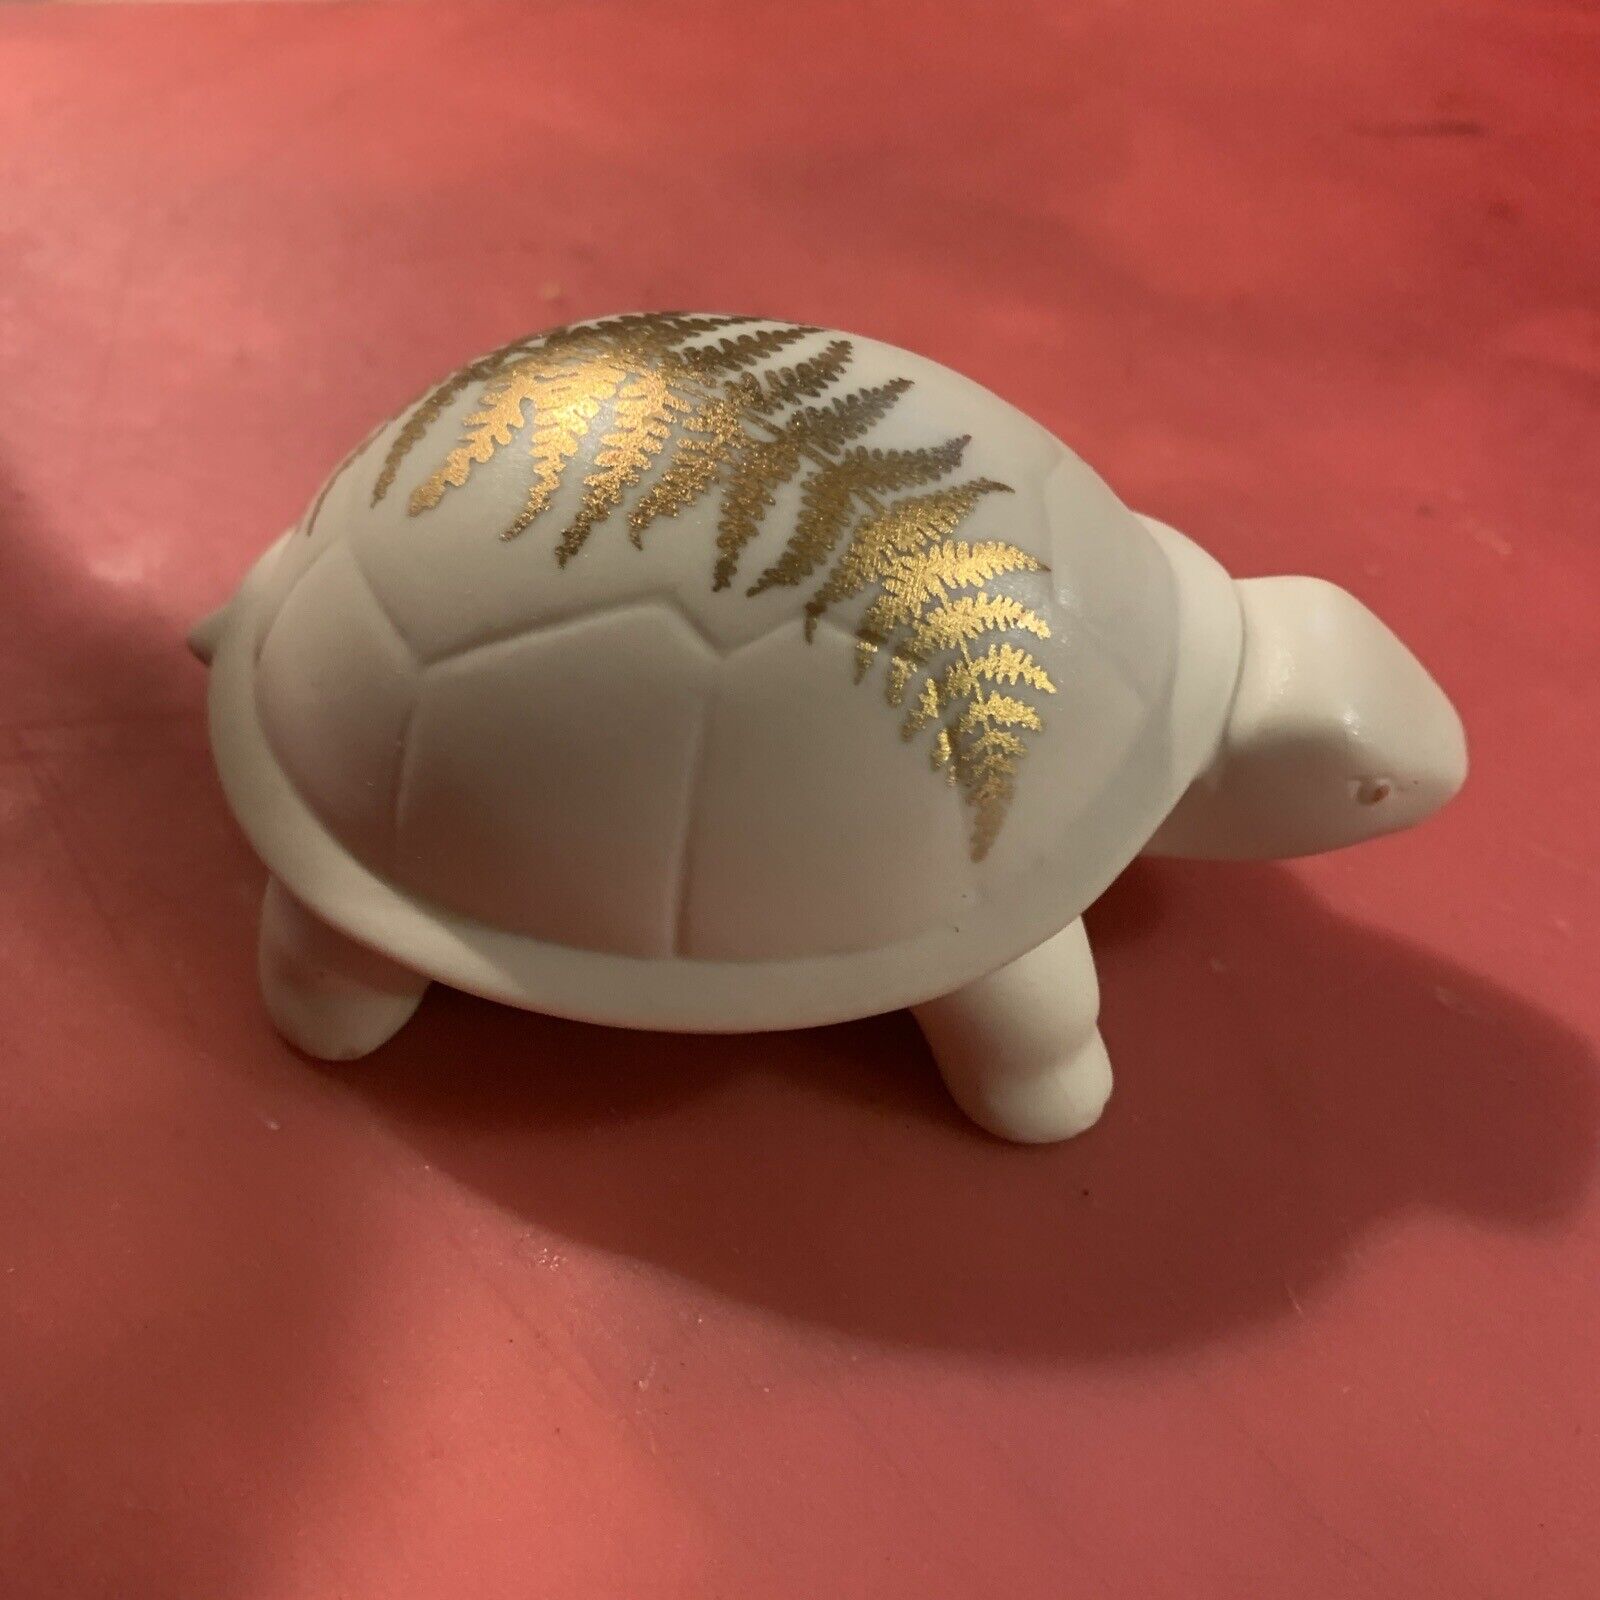 LENOX-Everday Wishes Longevity Turtle Ivory Figurine With Gold Trim 3.5”Lx2.25”W